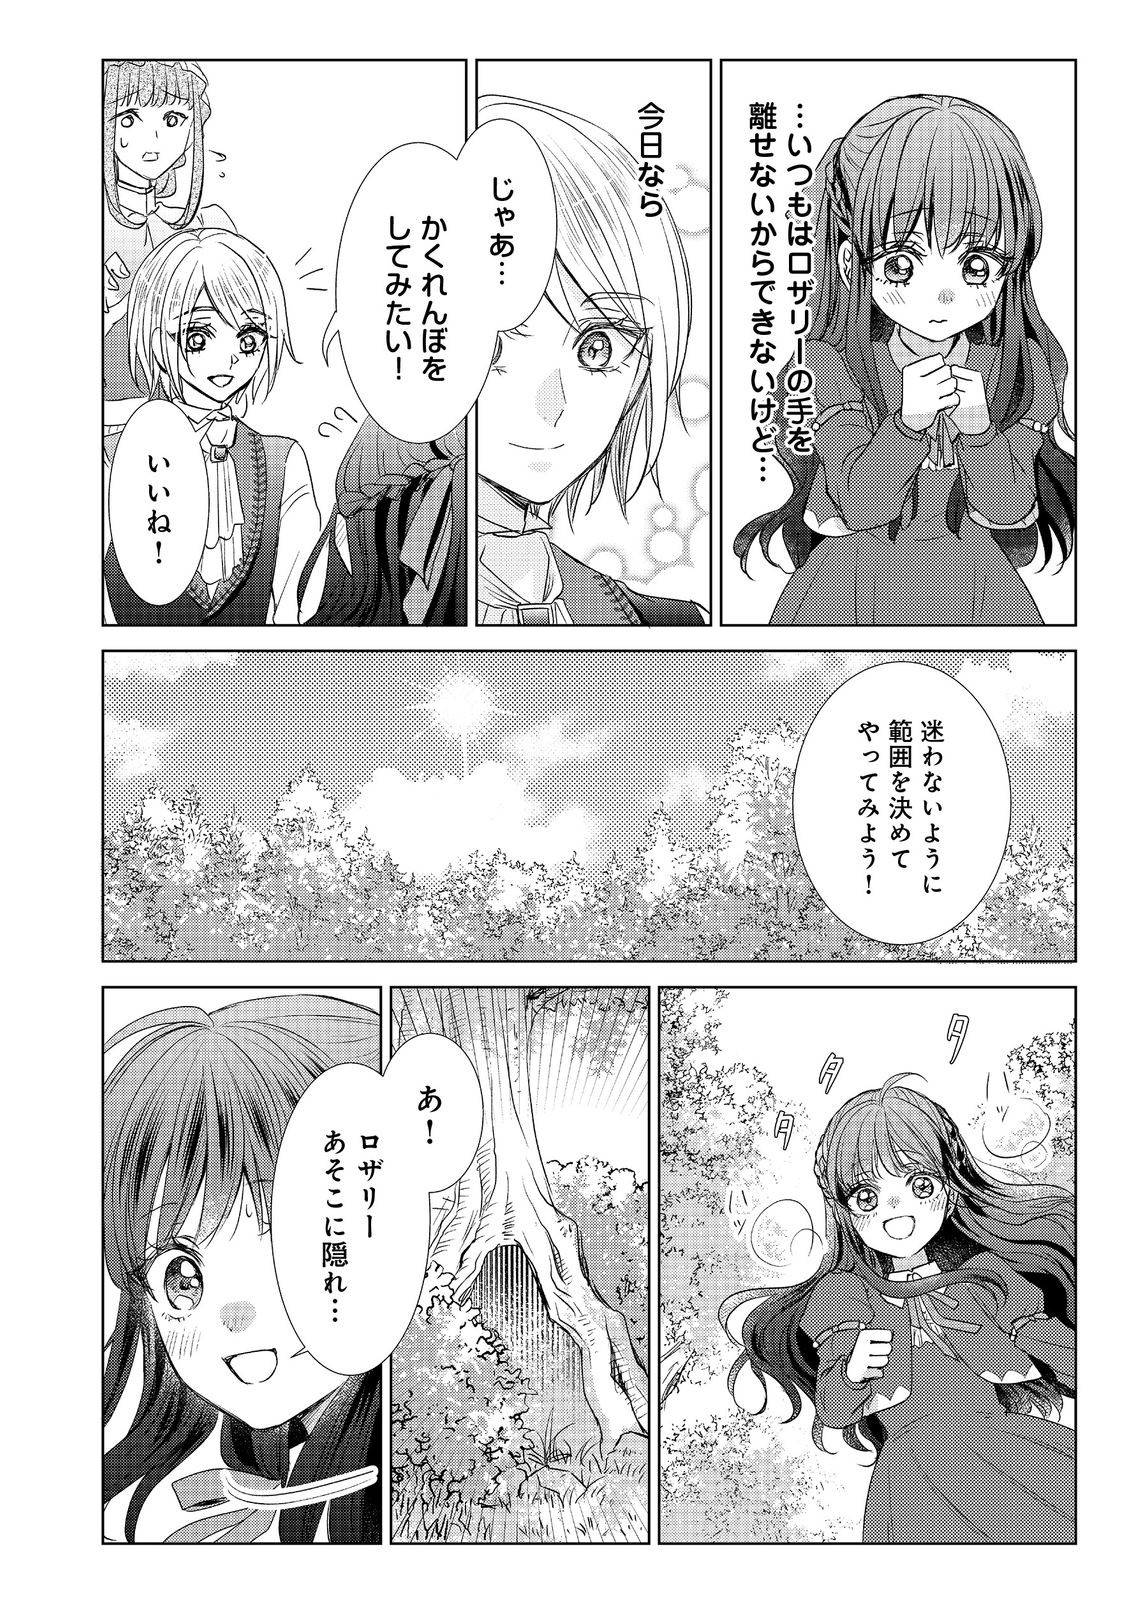 Koishita Hito wa, Imouto no Kawari ni Shindekure to Itta - Chapter 11.2 - Page 2